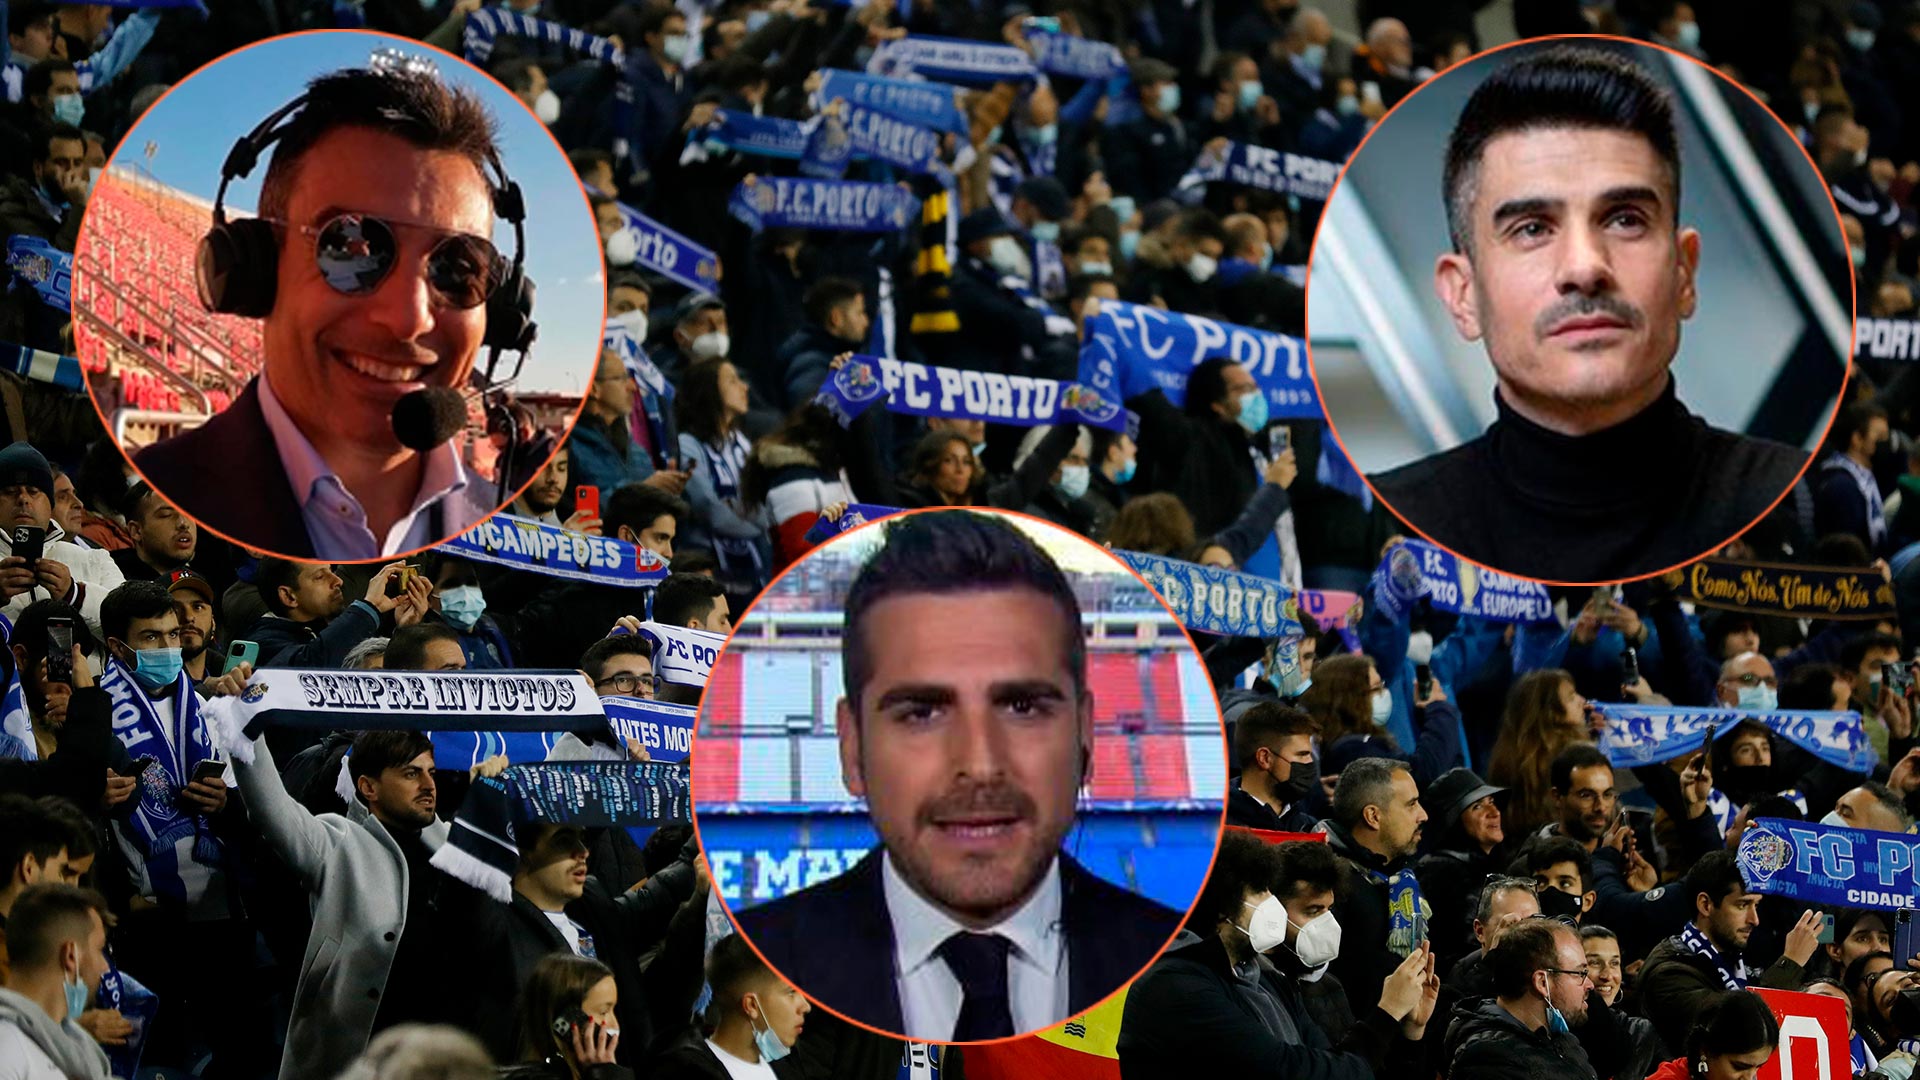 El ex futbolista Gustavo López y dos periodistas fueron agredidos por fans del Porto en plena transmisión: “Se está poniendo fea la cosa”